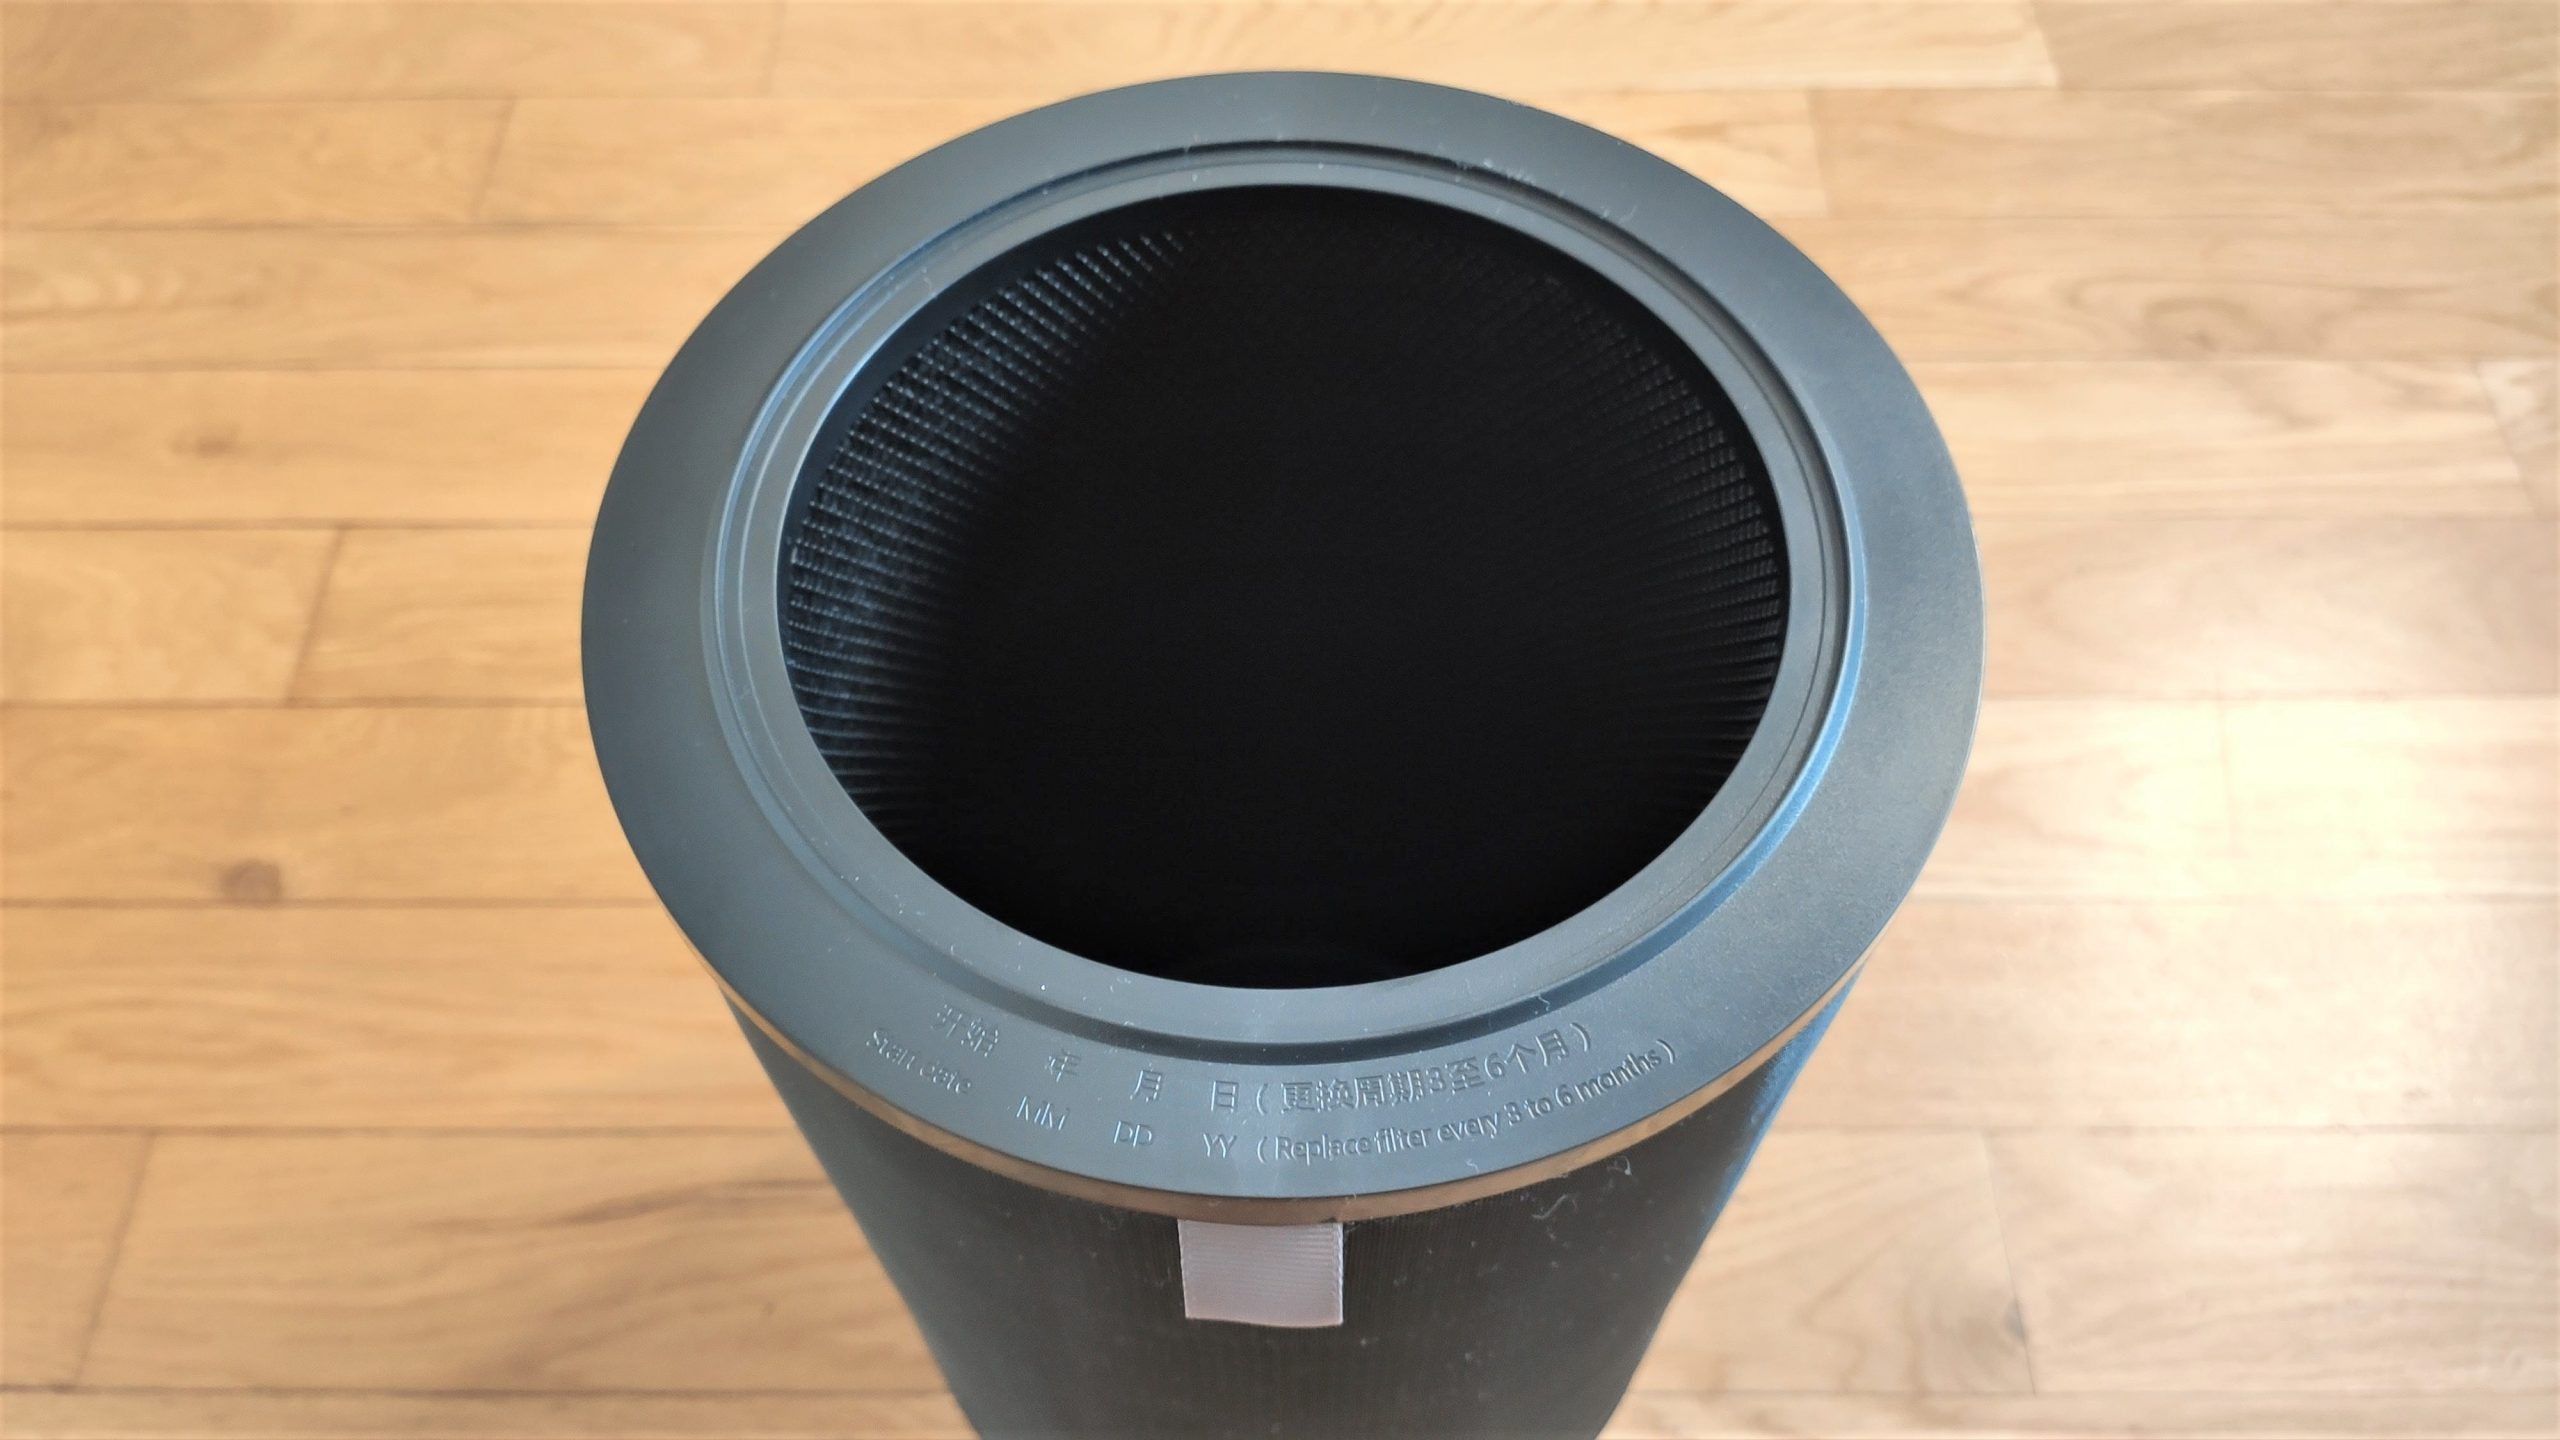  Smartmi Air Purifier filtr oczyszczacza ranking